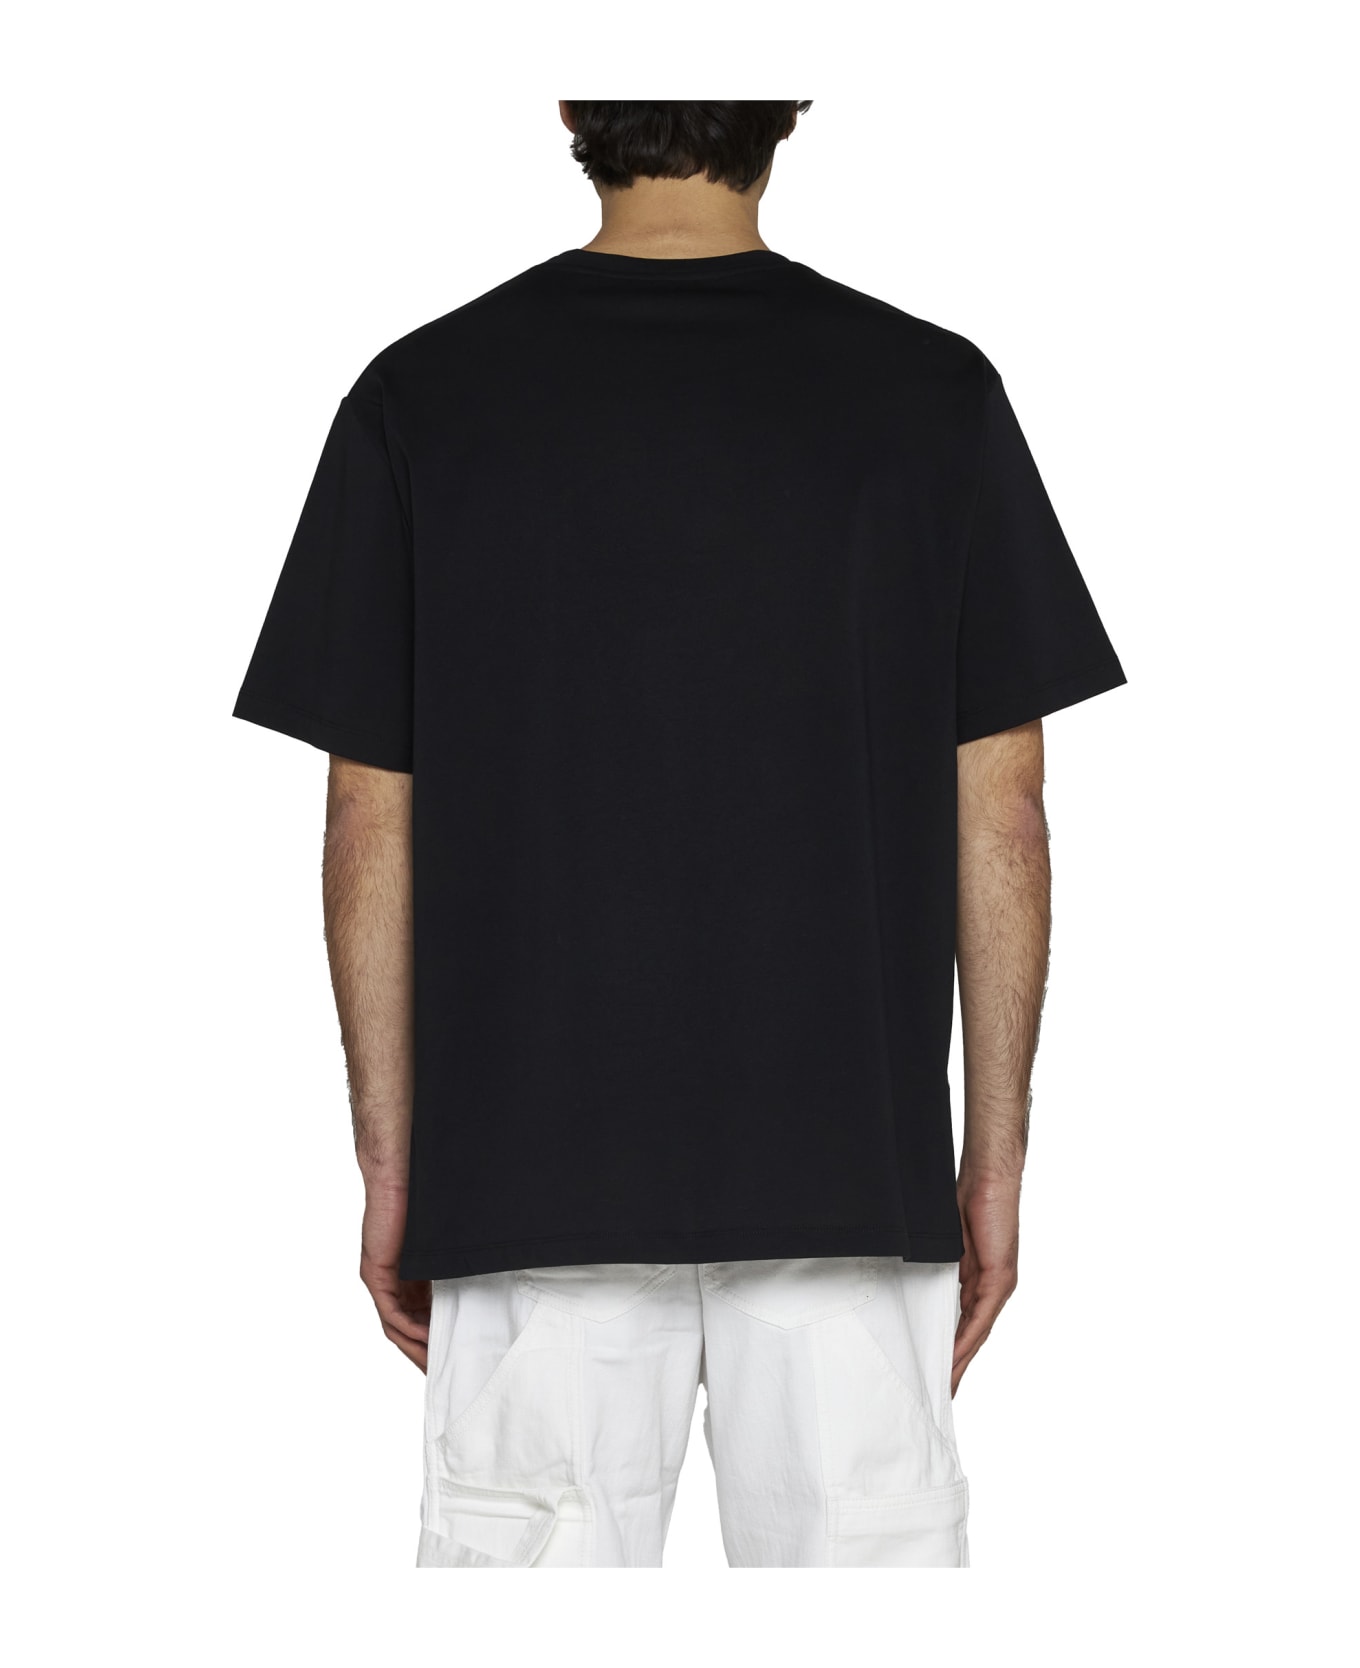 Balmain Printed T-shirt - Black シャツ